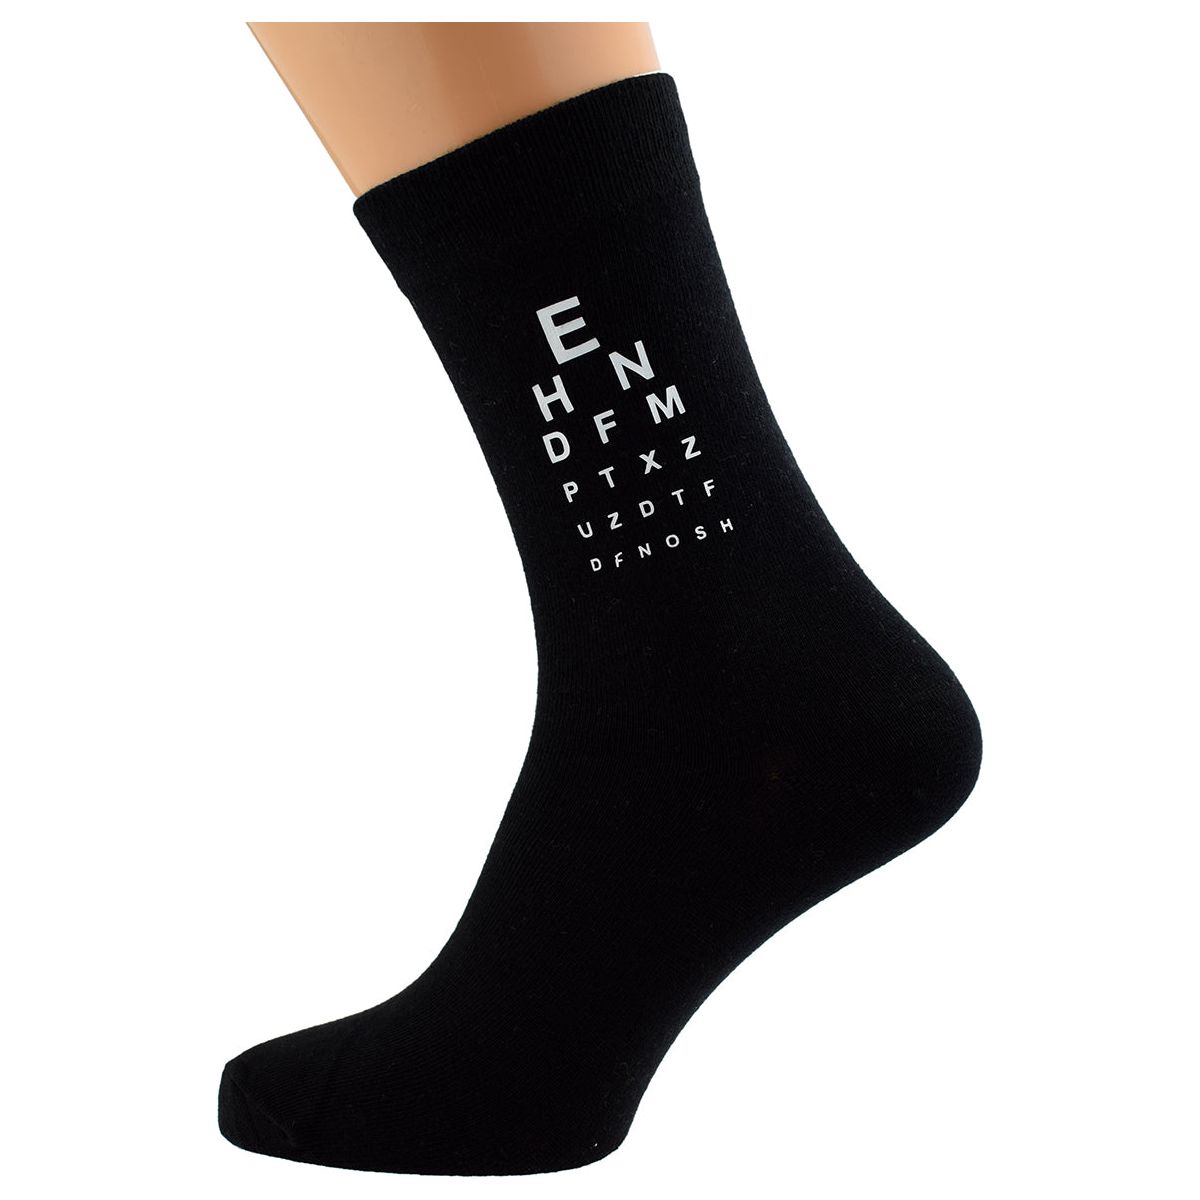 Eye Test Design Mens Black Socks - Ashton and Finch